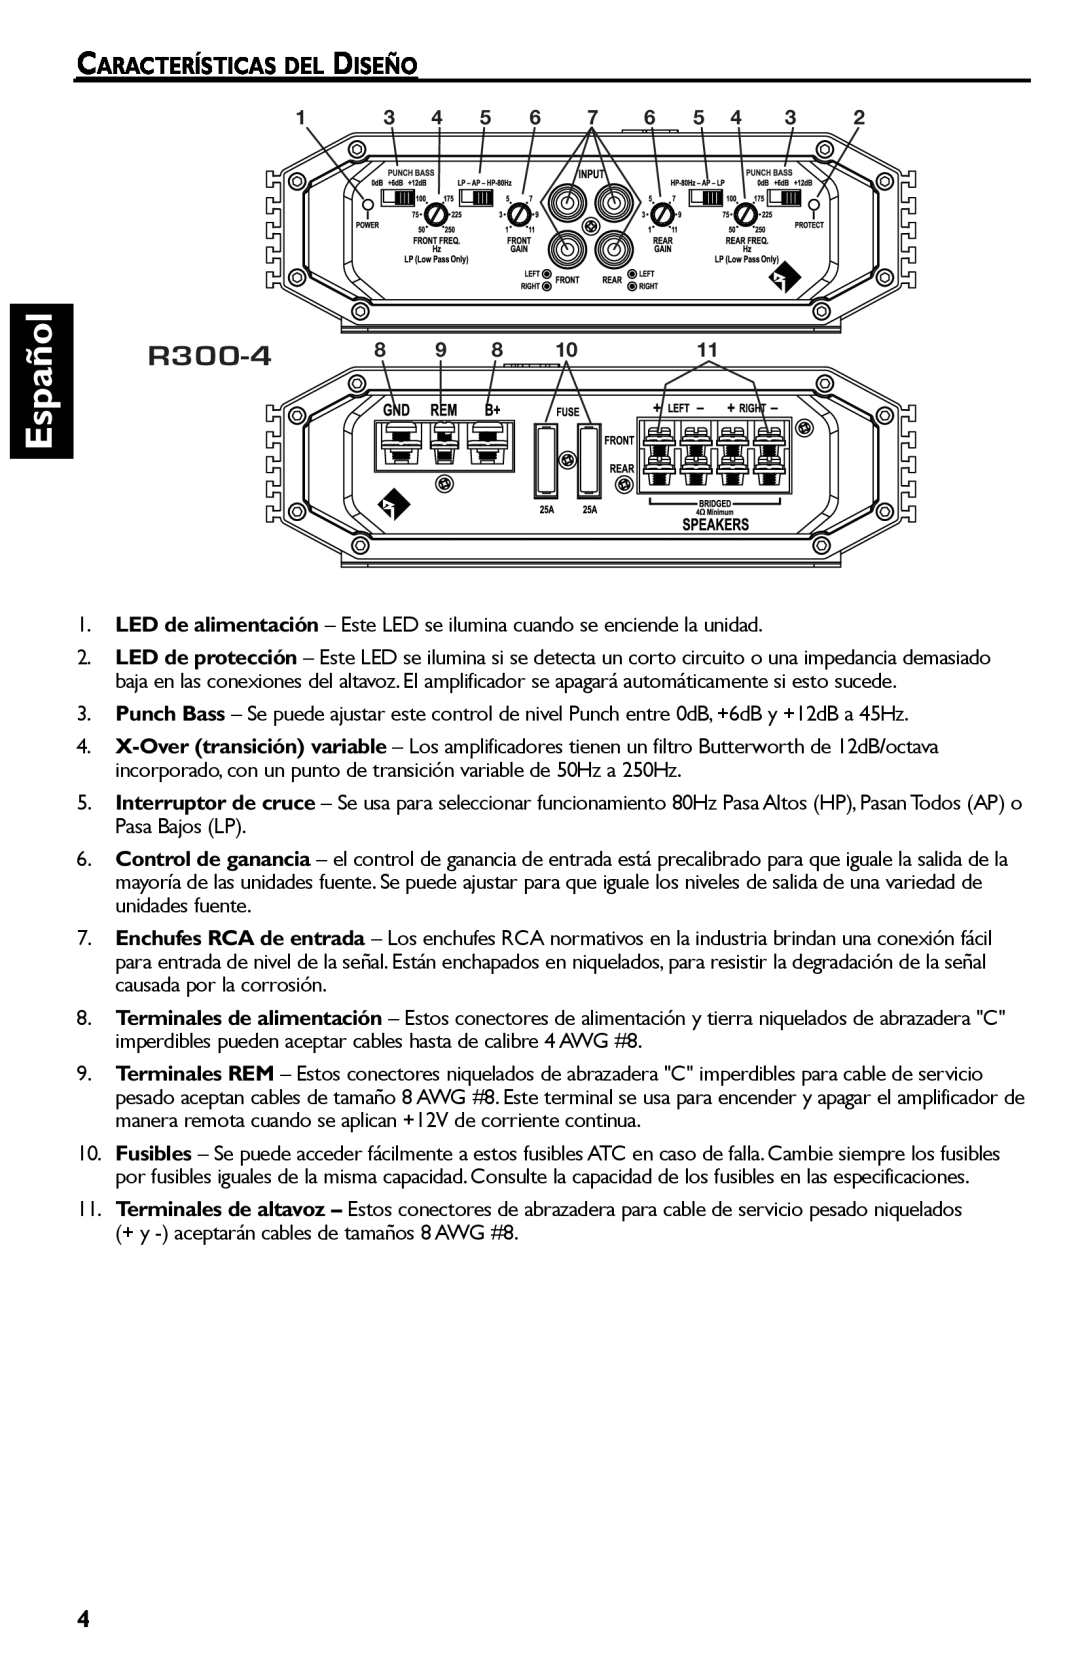 Rockford Fosgate R300-4 manual Español, Características Del Diseño 